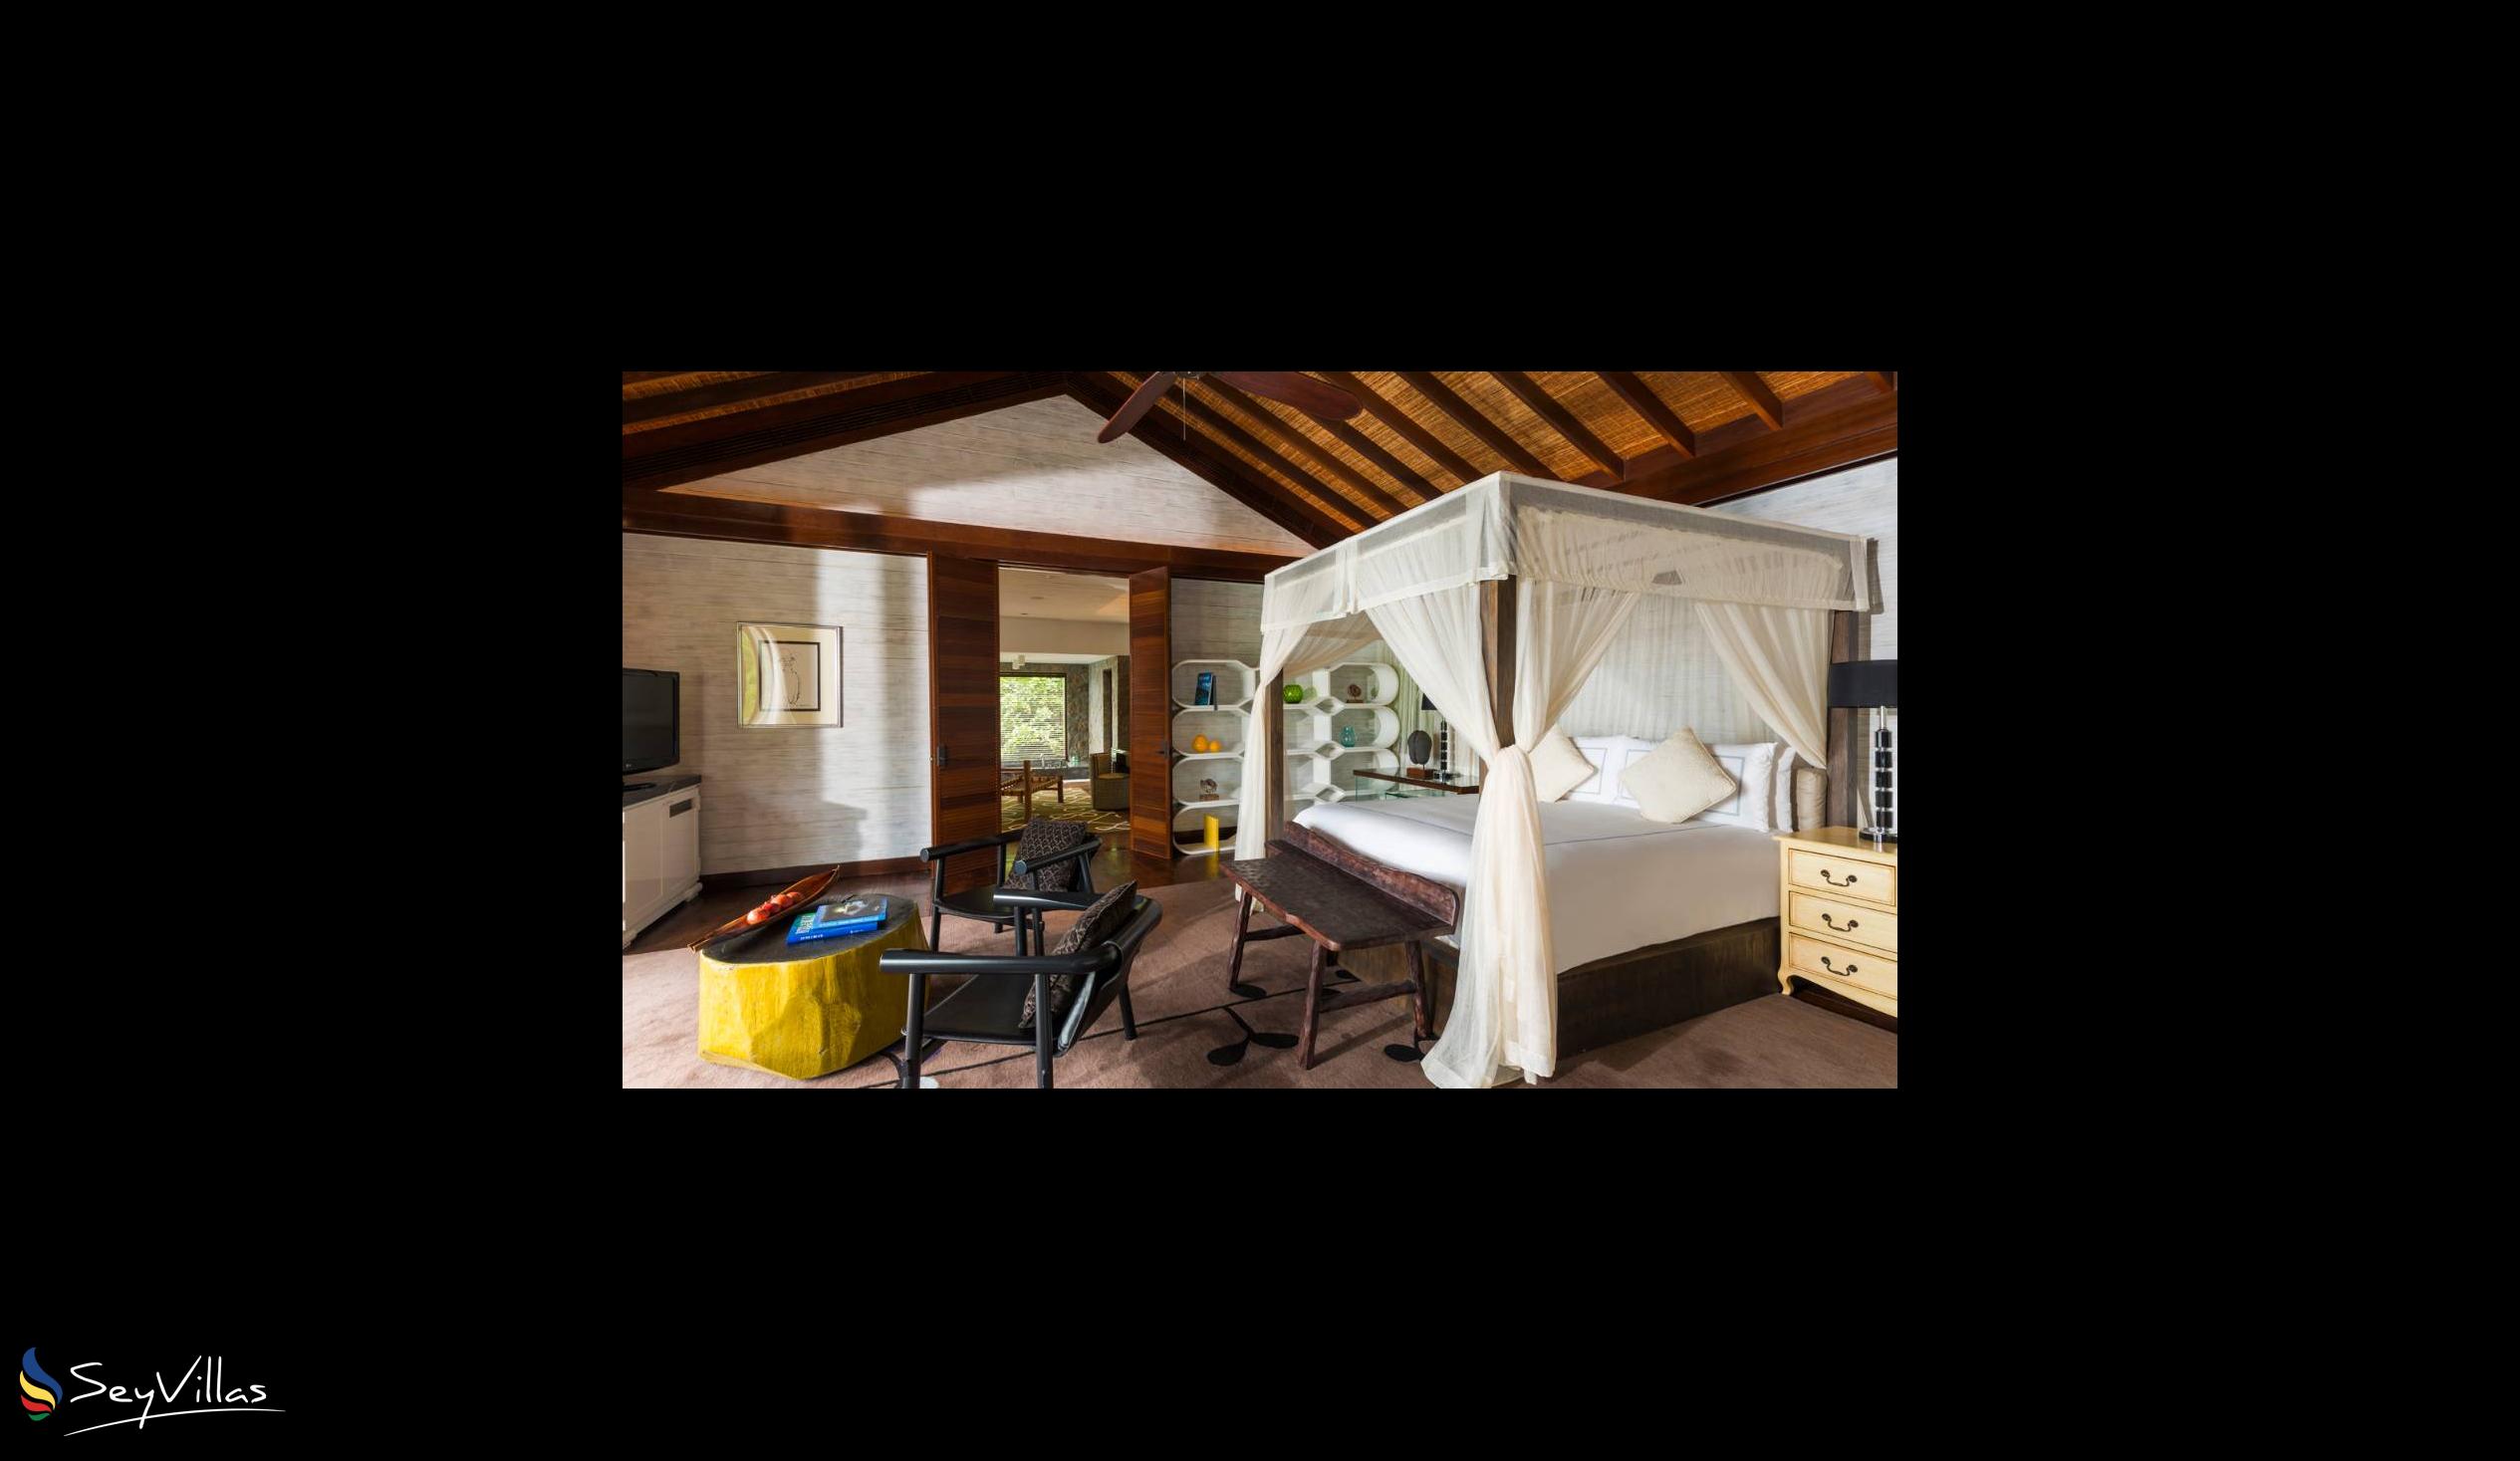 Foto 65: Four Seasons Resort - 4-Bedroom Residence Villa - Mahé (Seychelles)